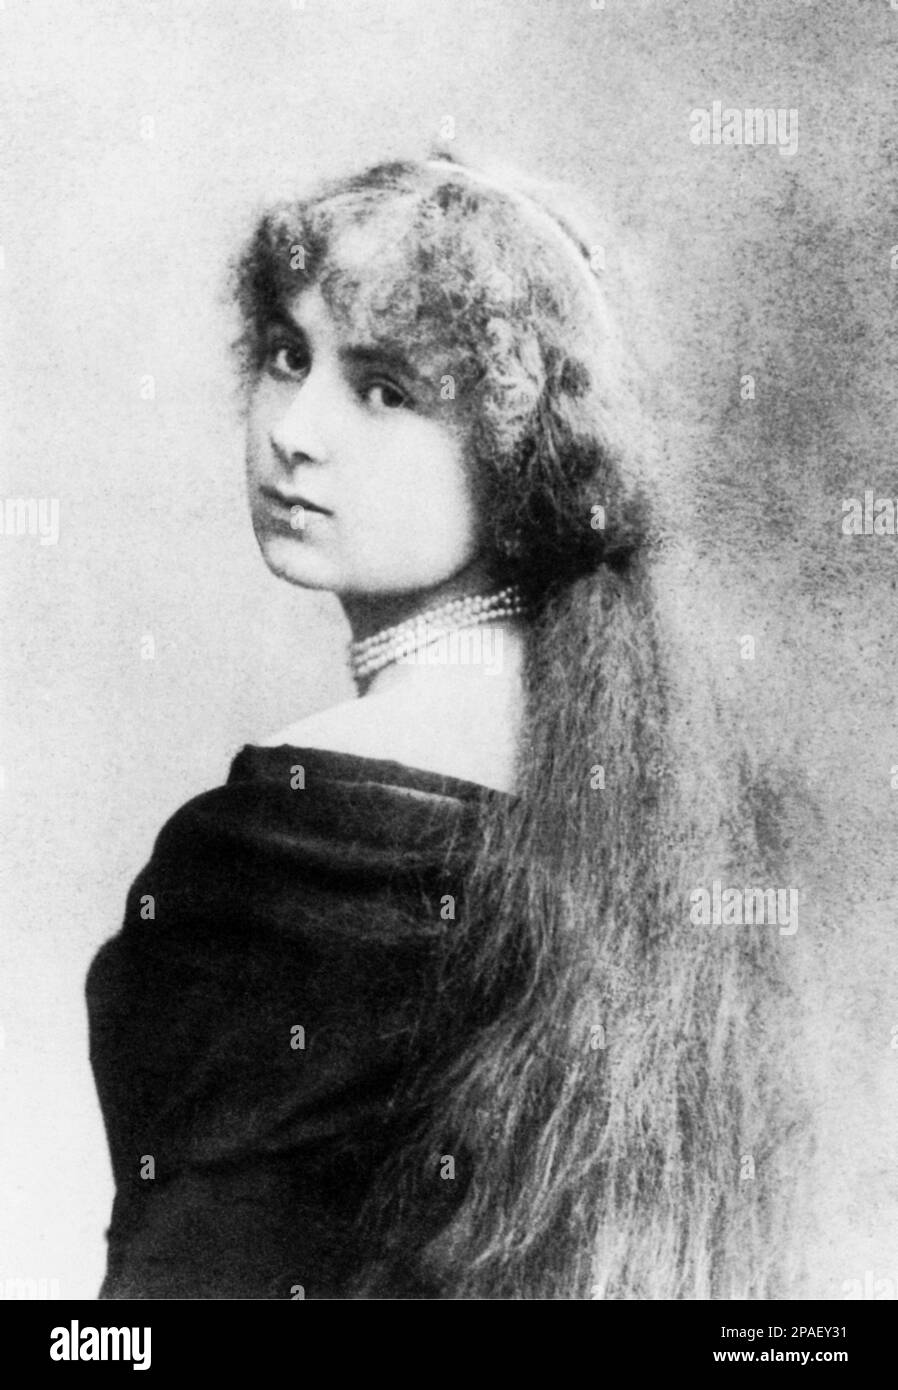 1879 : The princess MARIA HARDOUIN DEL GALLESE , married in 1883 with italian poet , politician and writer GABRIELE D'ANNUNZIO (Pescara 1863 - Gardone Riviera 1938 ) - pearls necklace - collana di perle - perla - bijoux - jewels - jewellery pizzo - lace - portrait - ritratto - Dannunzio  - DI GALLESE - principessa - nobili - nobility - Nobiltà  italiana  - BELLE EPOQUE ----      ARCHIVIO GBB Stock Photo